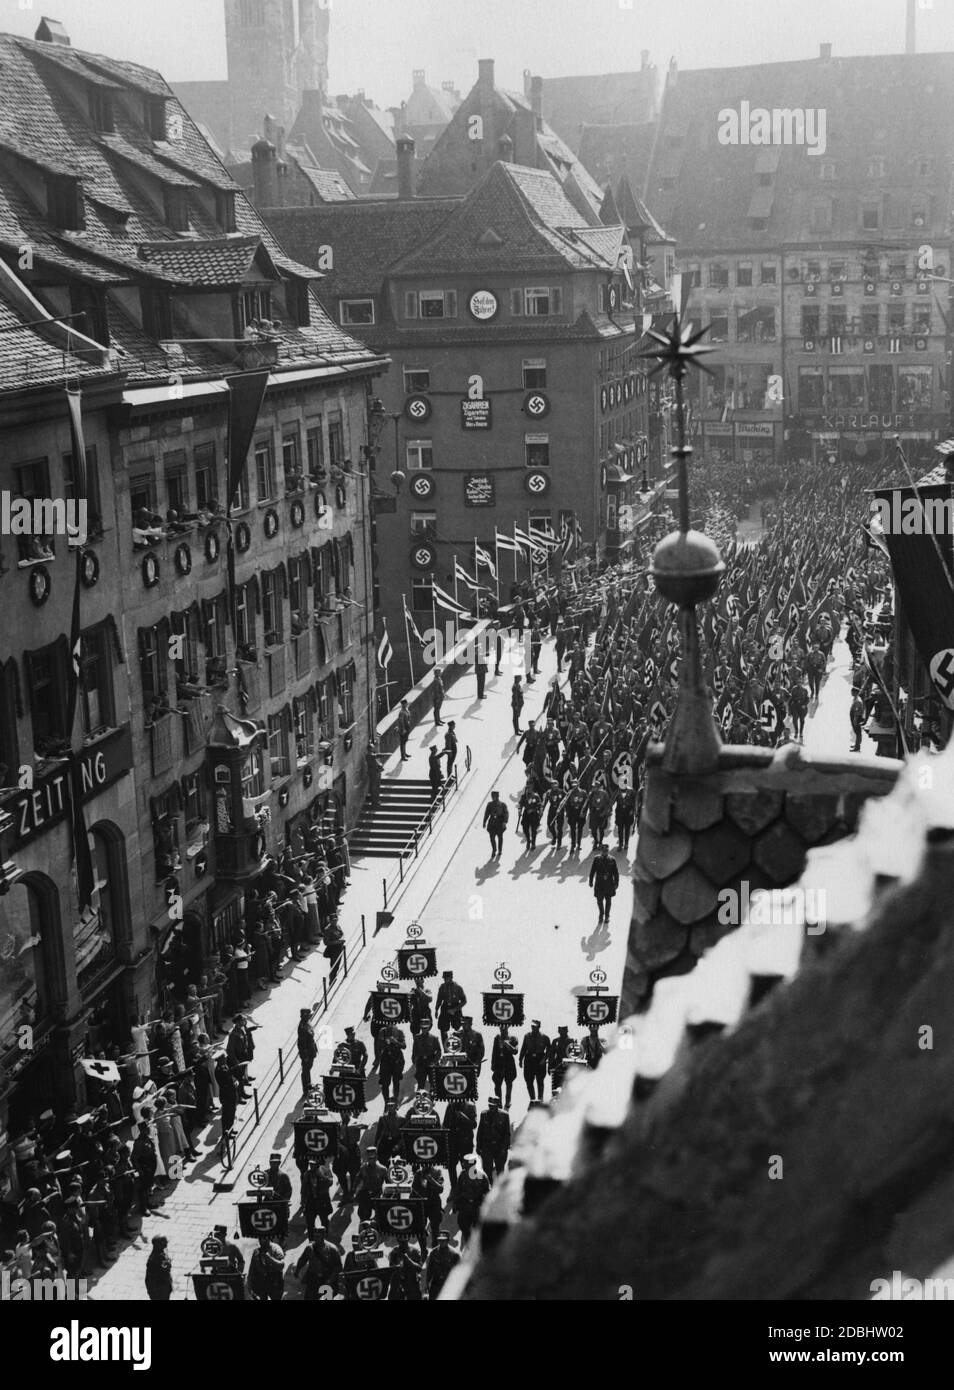 « LES unités DE LA SA traversent le pont Fleisch sur le chemin de la place Adolf-Hitler-Platz. Sur le bâtiment de l'autre côté du pont, sur la gauche, il y a plusieurs swastikas et un panneau indiquant ''Heil dem Fuehrer!'' (''Hail to the Fuehrer''). En bas à gauche, au milieu des spectateurs, il y a plusieurs infirmières. Banque D'Images